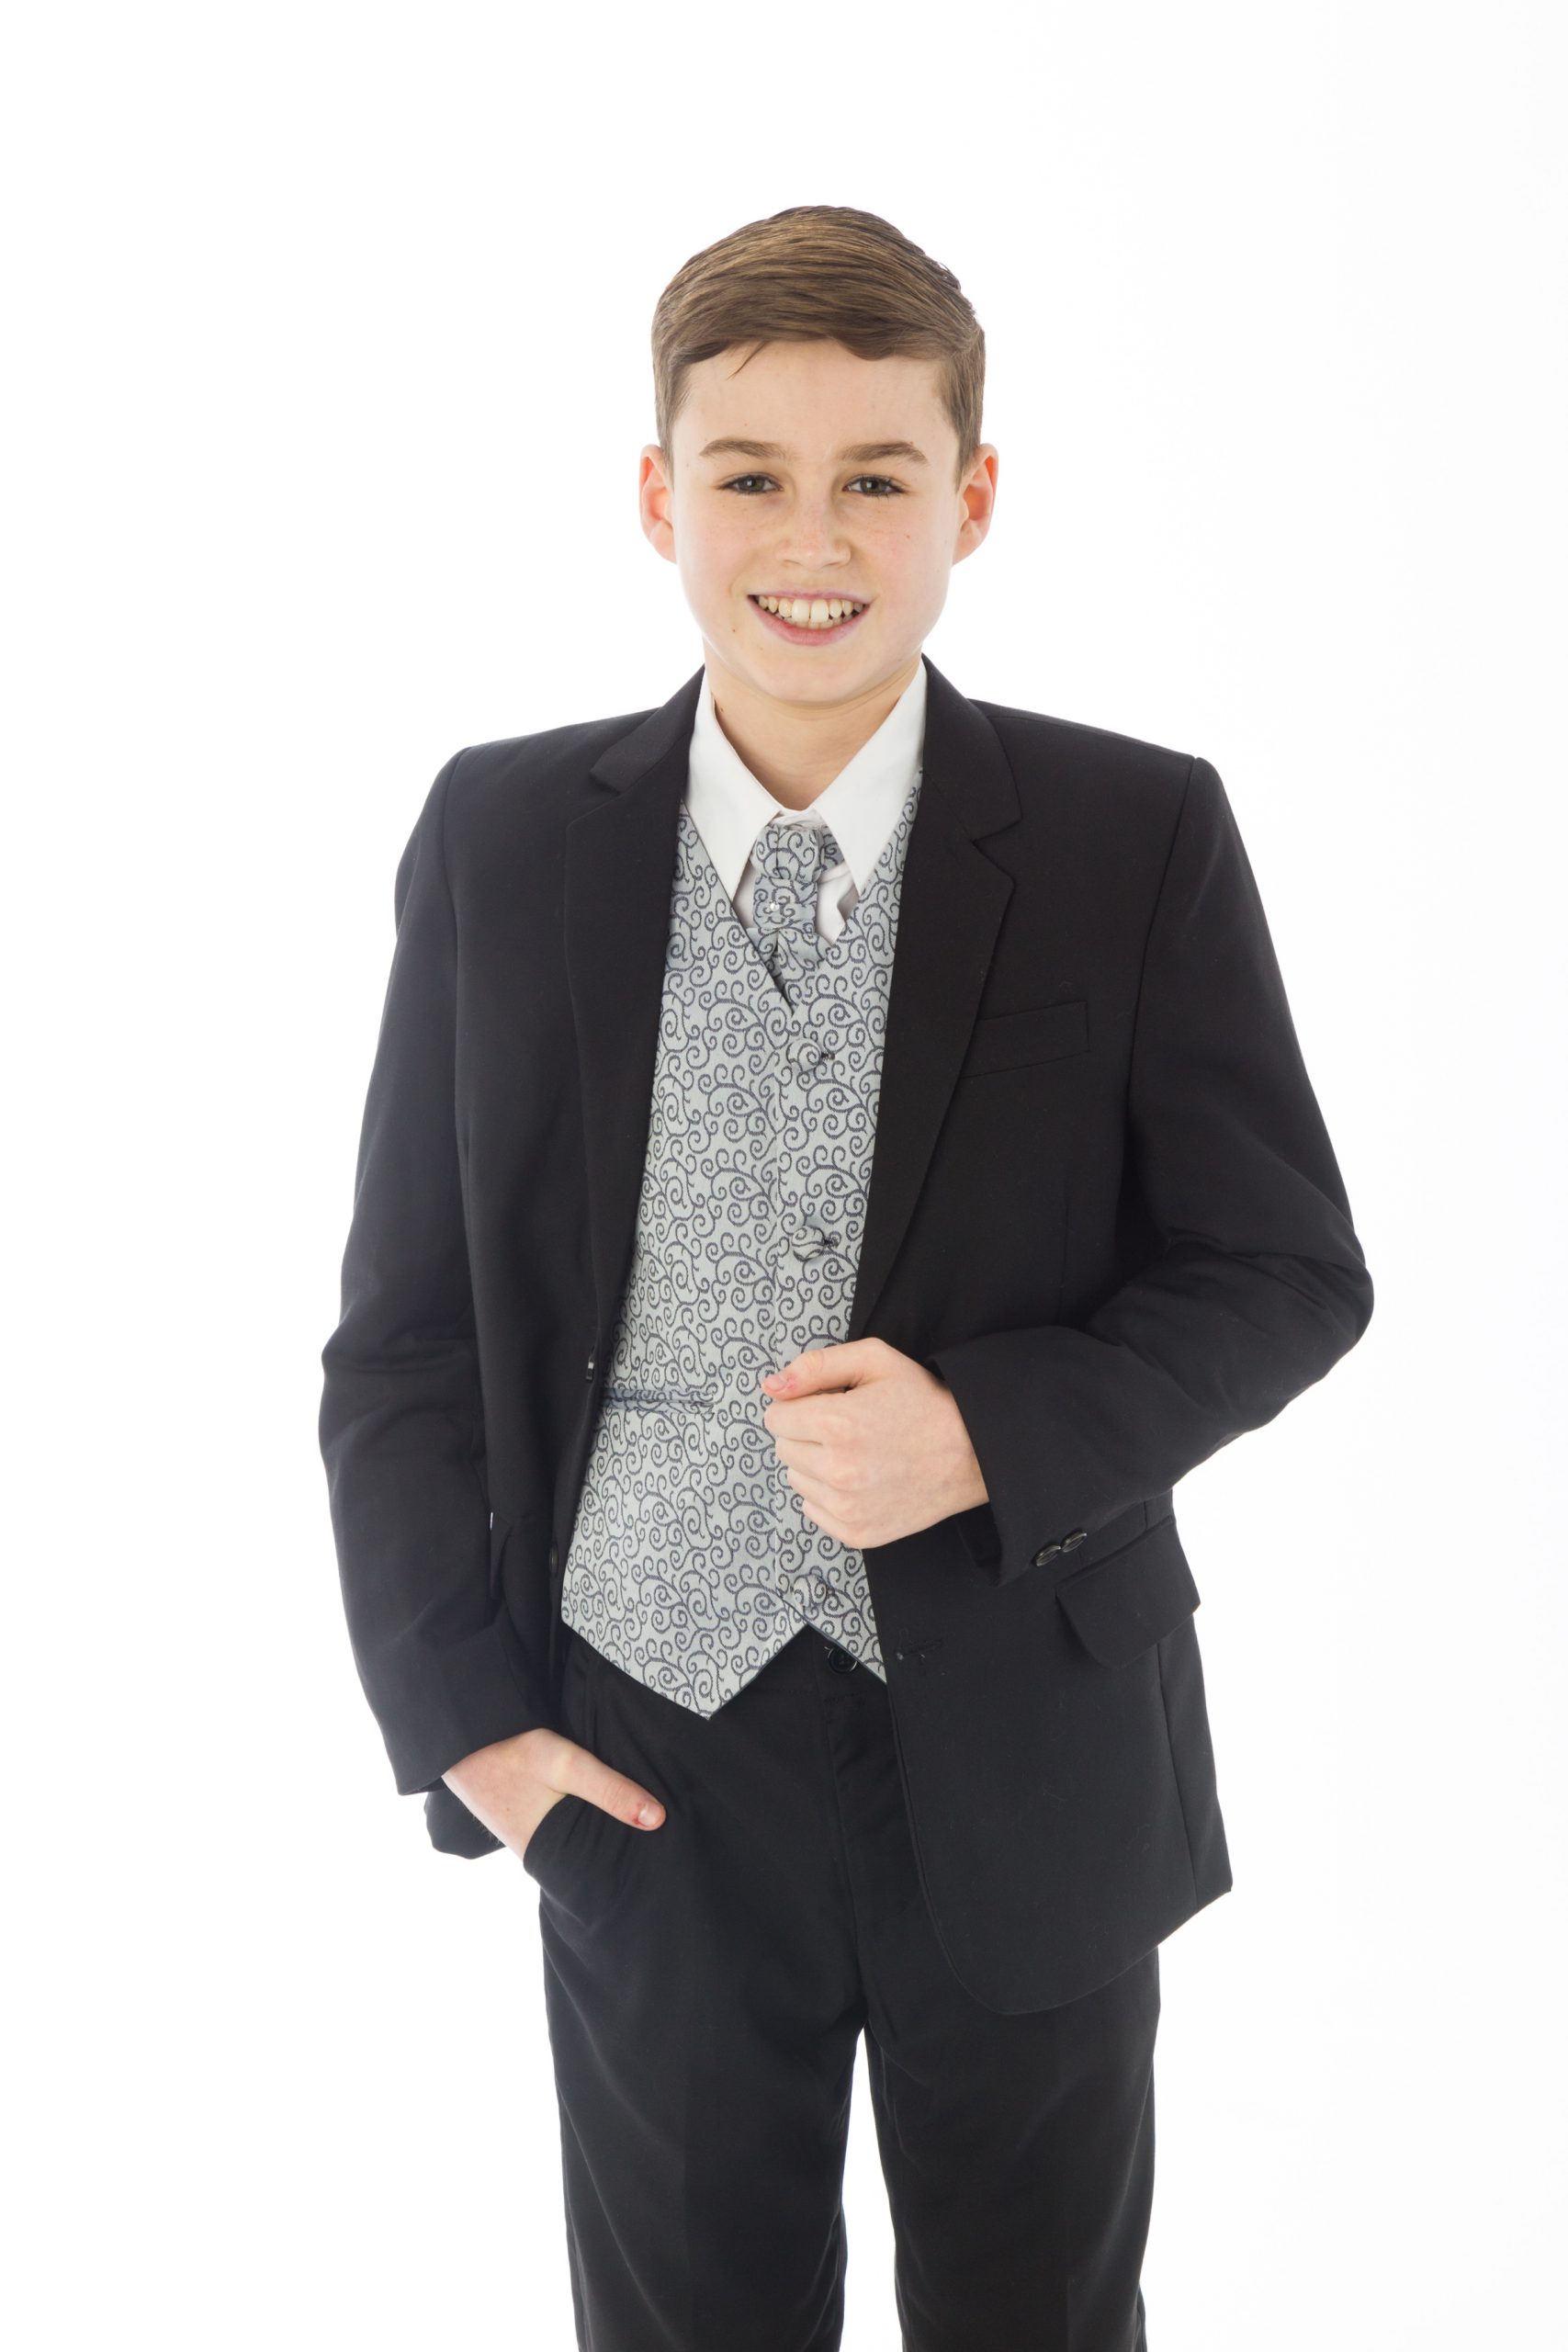 Black Tie Menswear | Suits To Buy